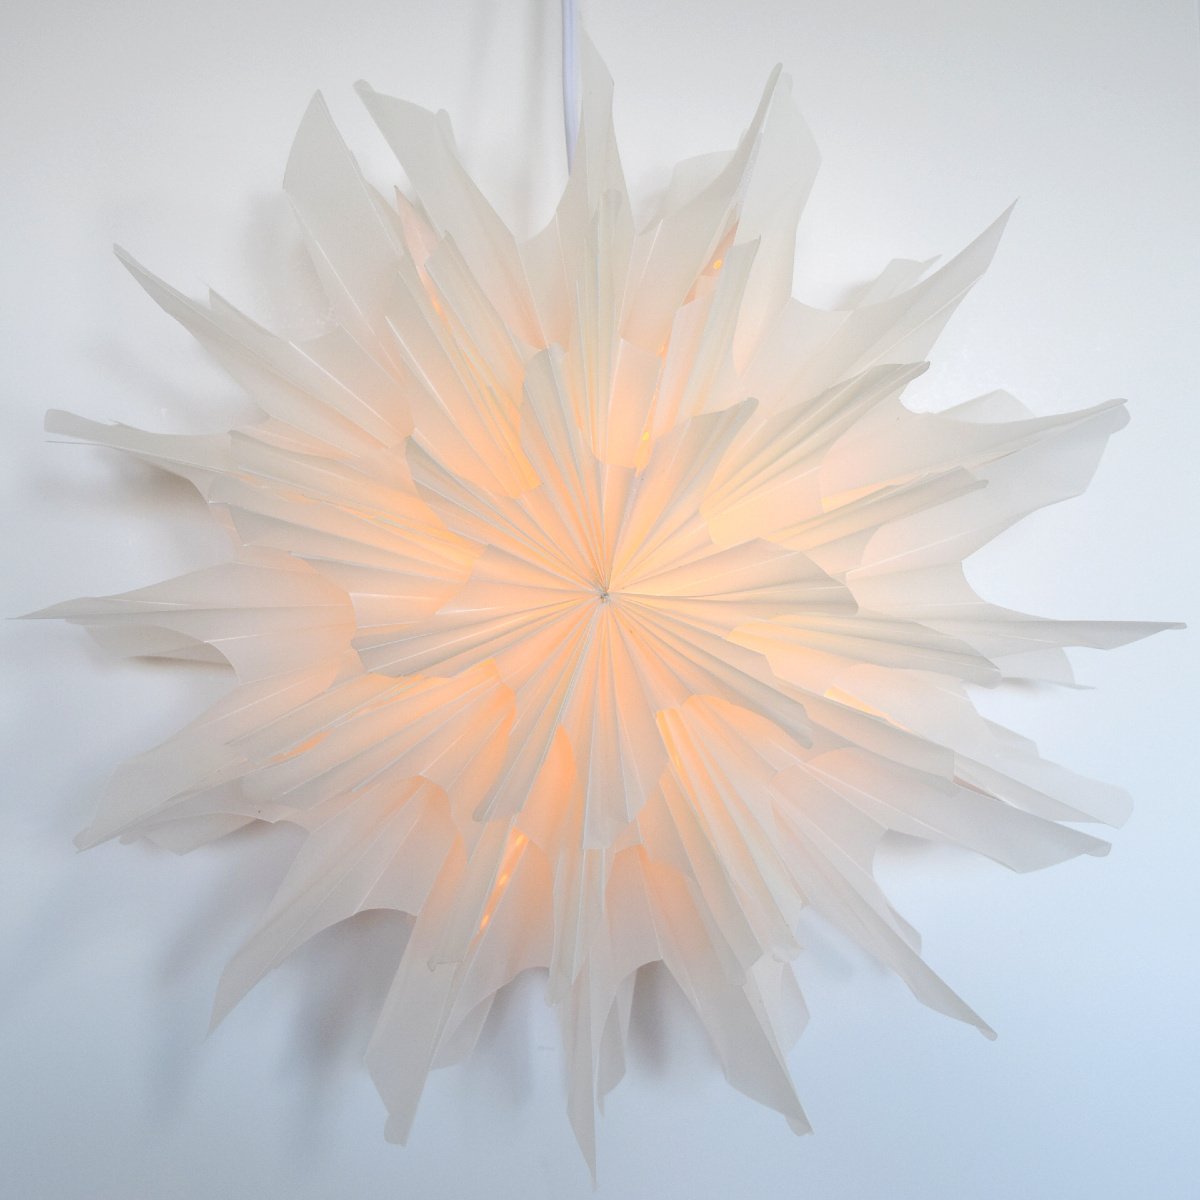 24" White Icicle Snowflake Star Lantern Pizzelle Design